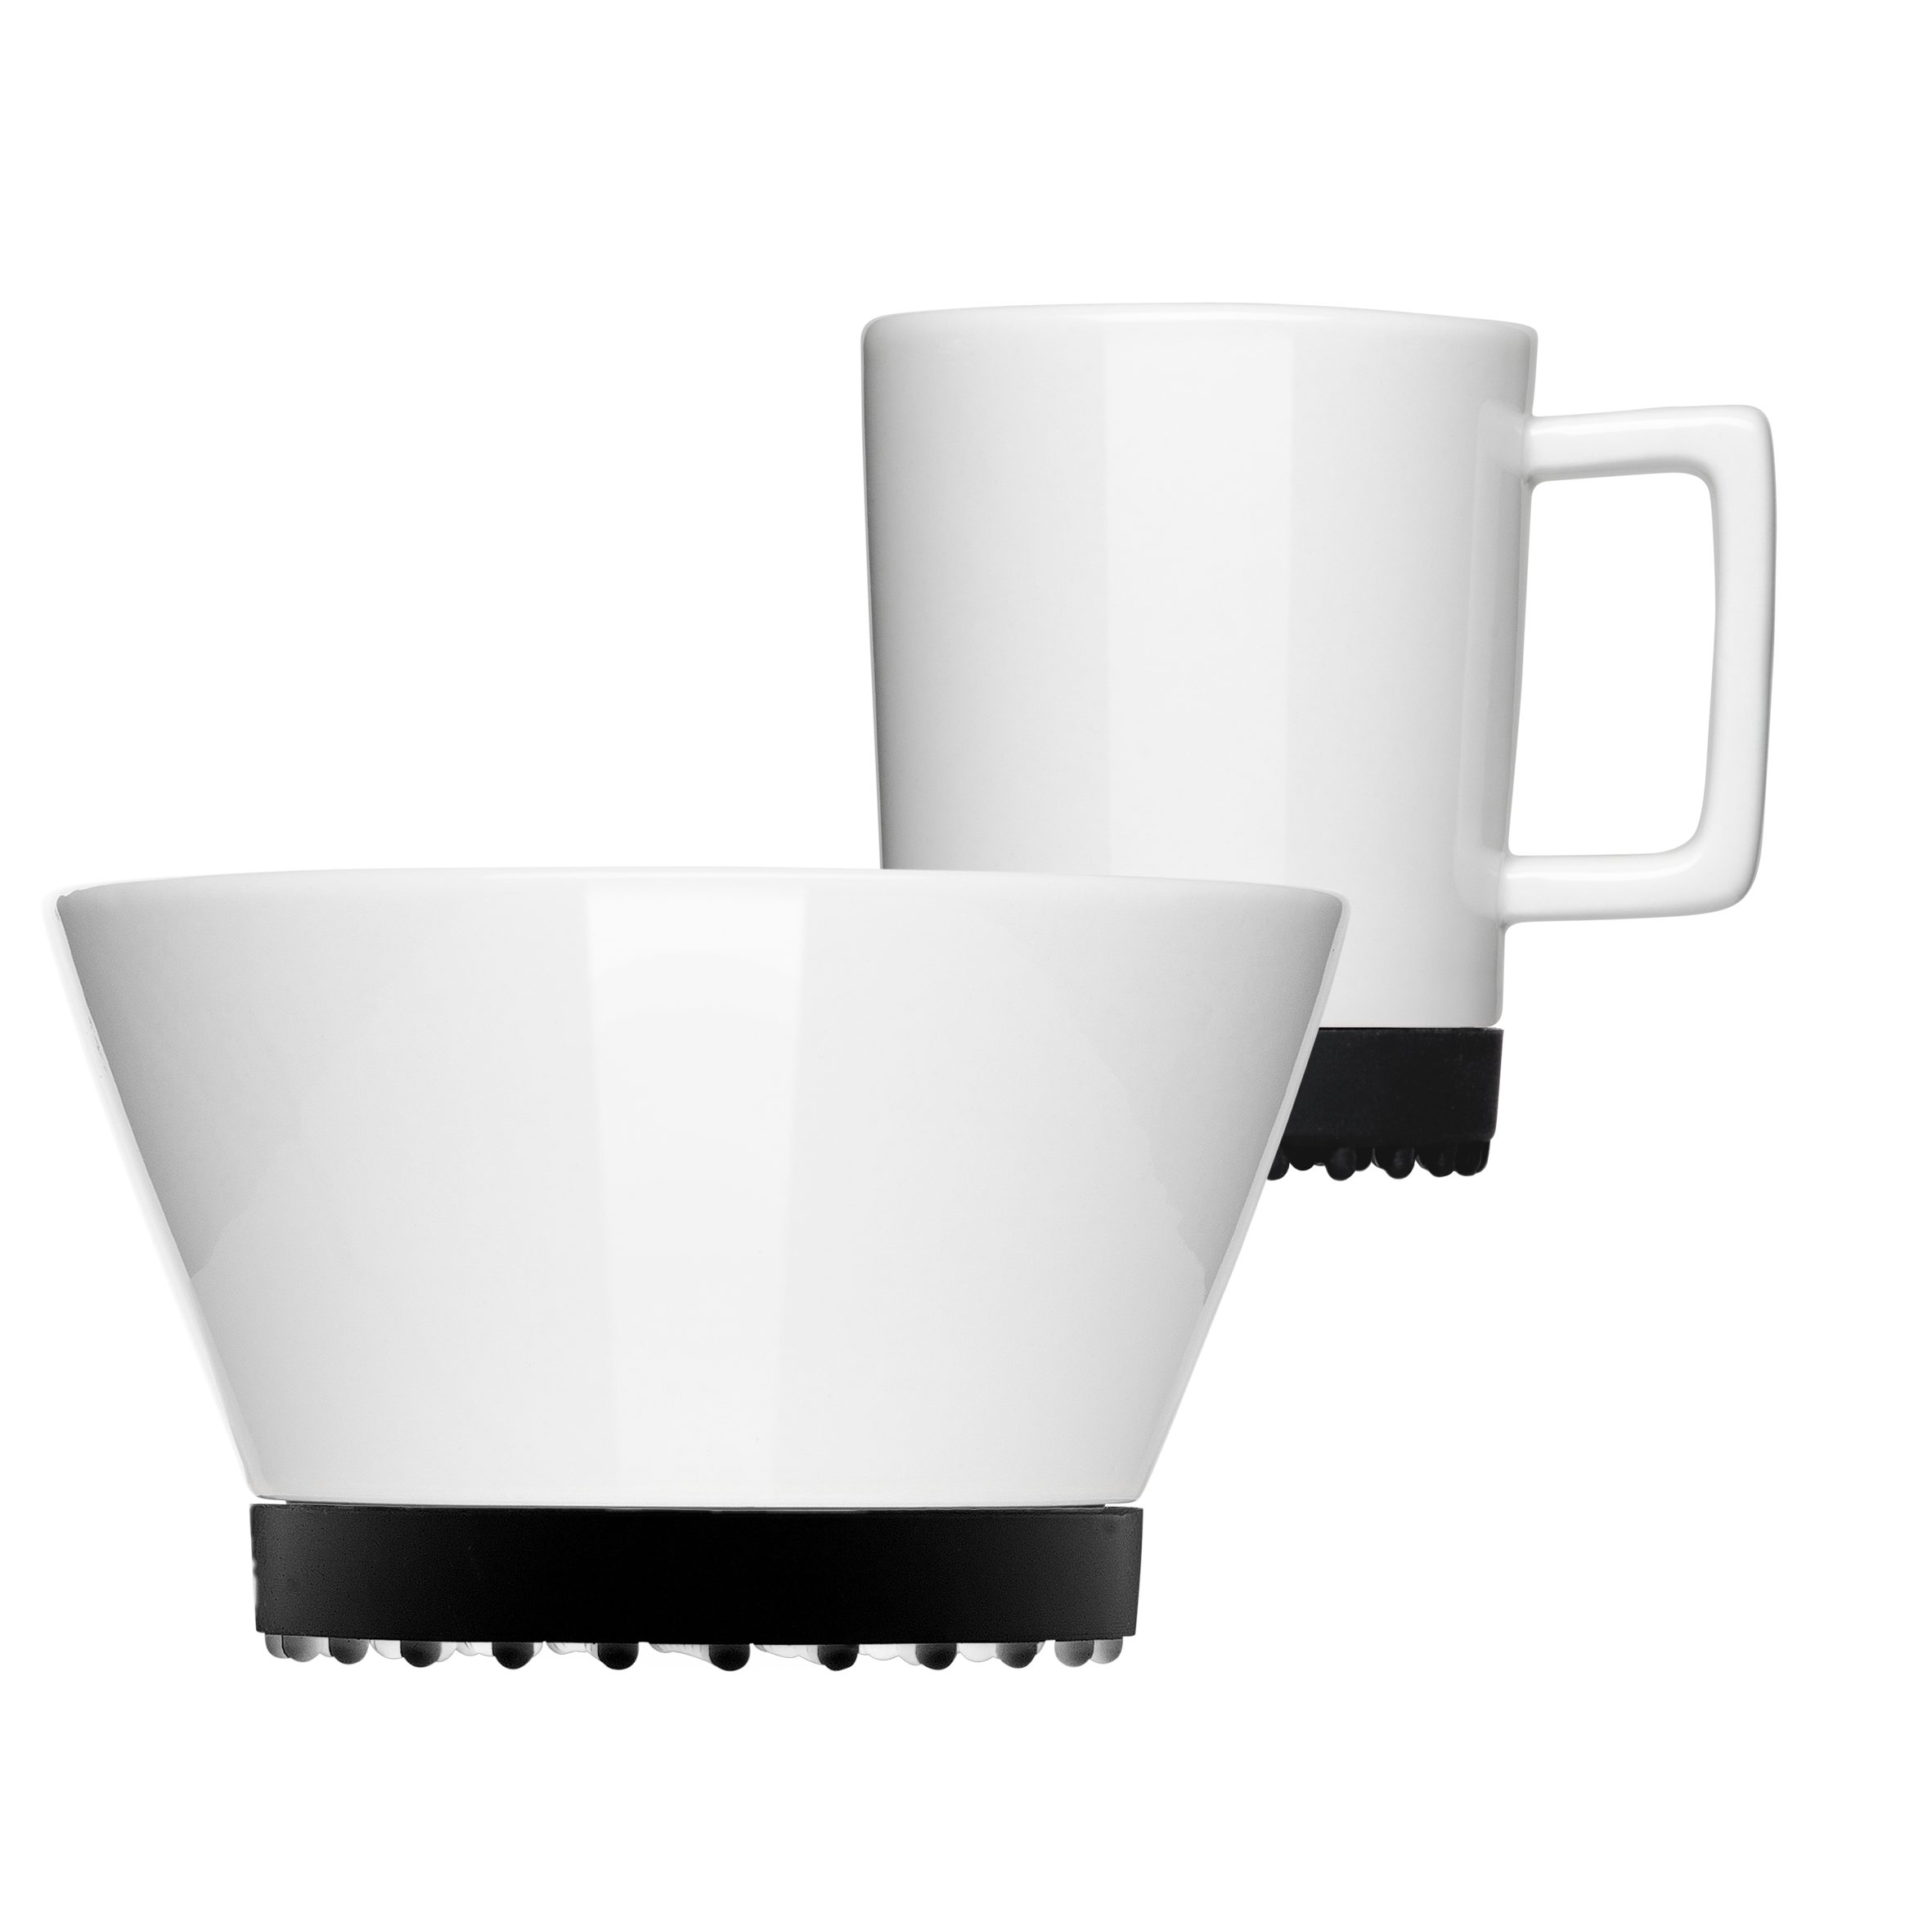 Black Frühstücks-Geschirrset mikrowellengeeignet, 1 Personen, Porzellan, SoftPad 2-teilig, (2-tlg), spülmaschinengeeignet Mahlwerck Manufaktur